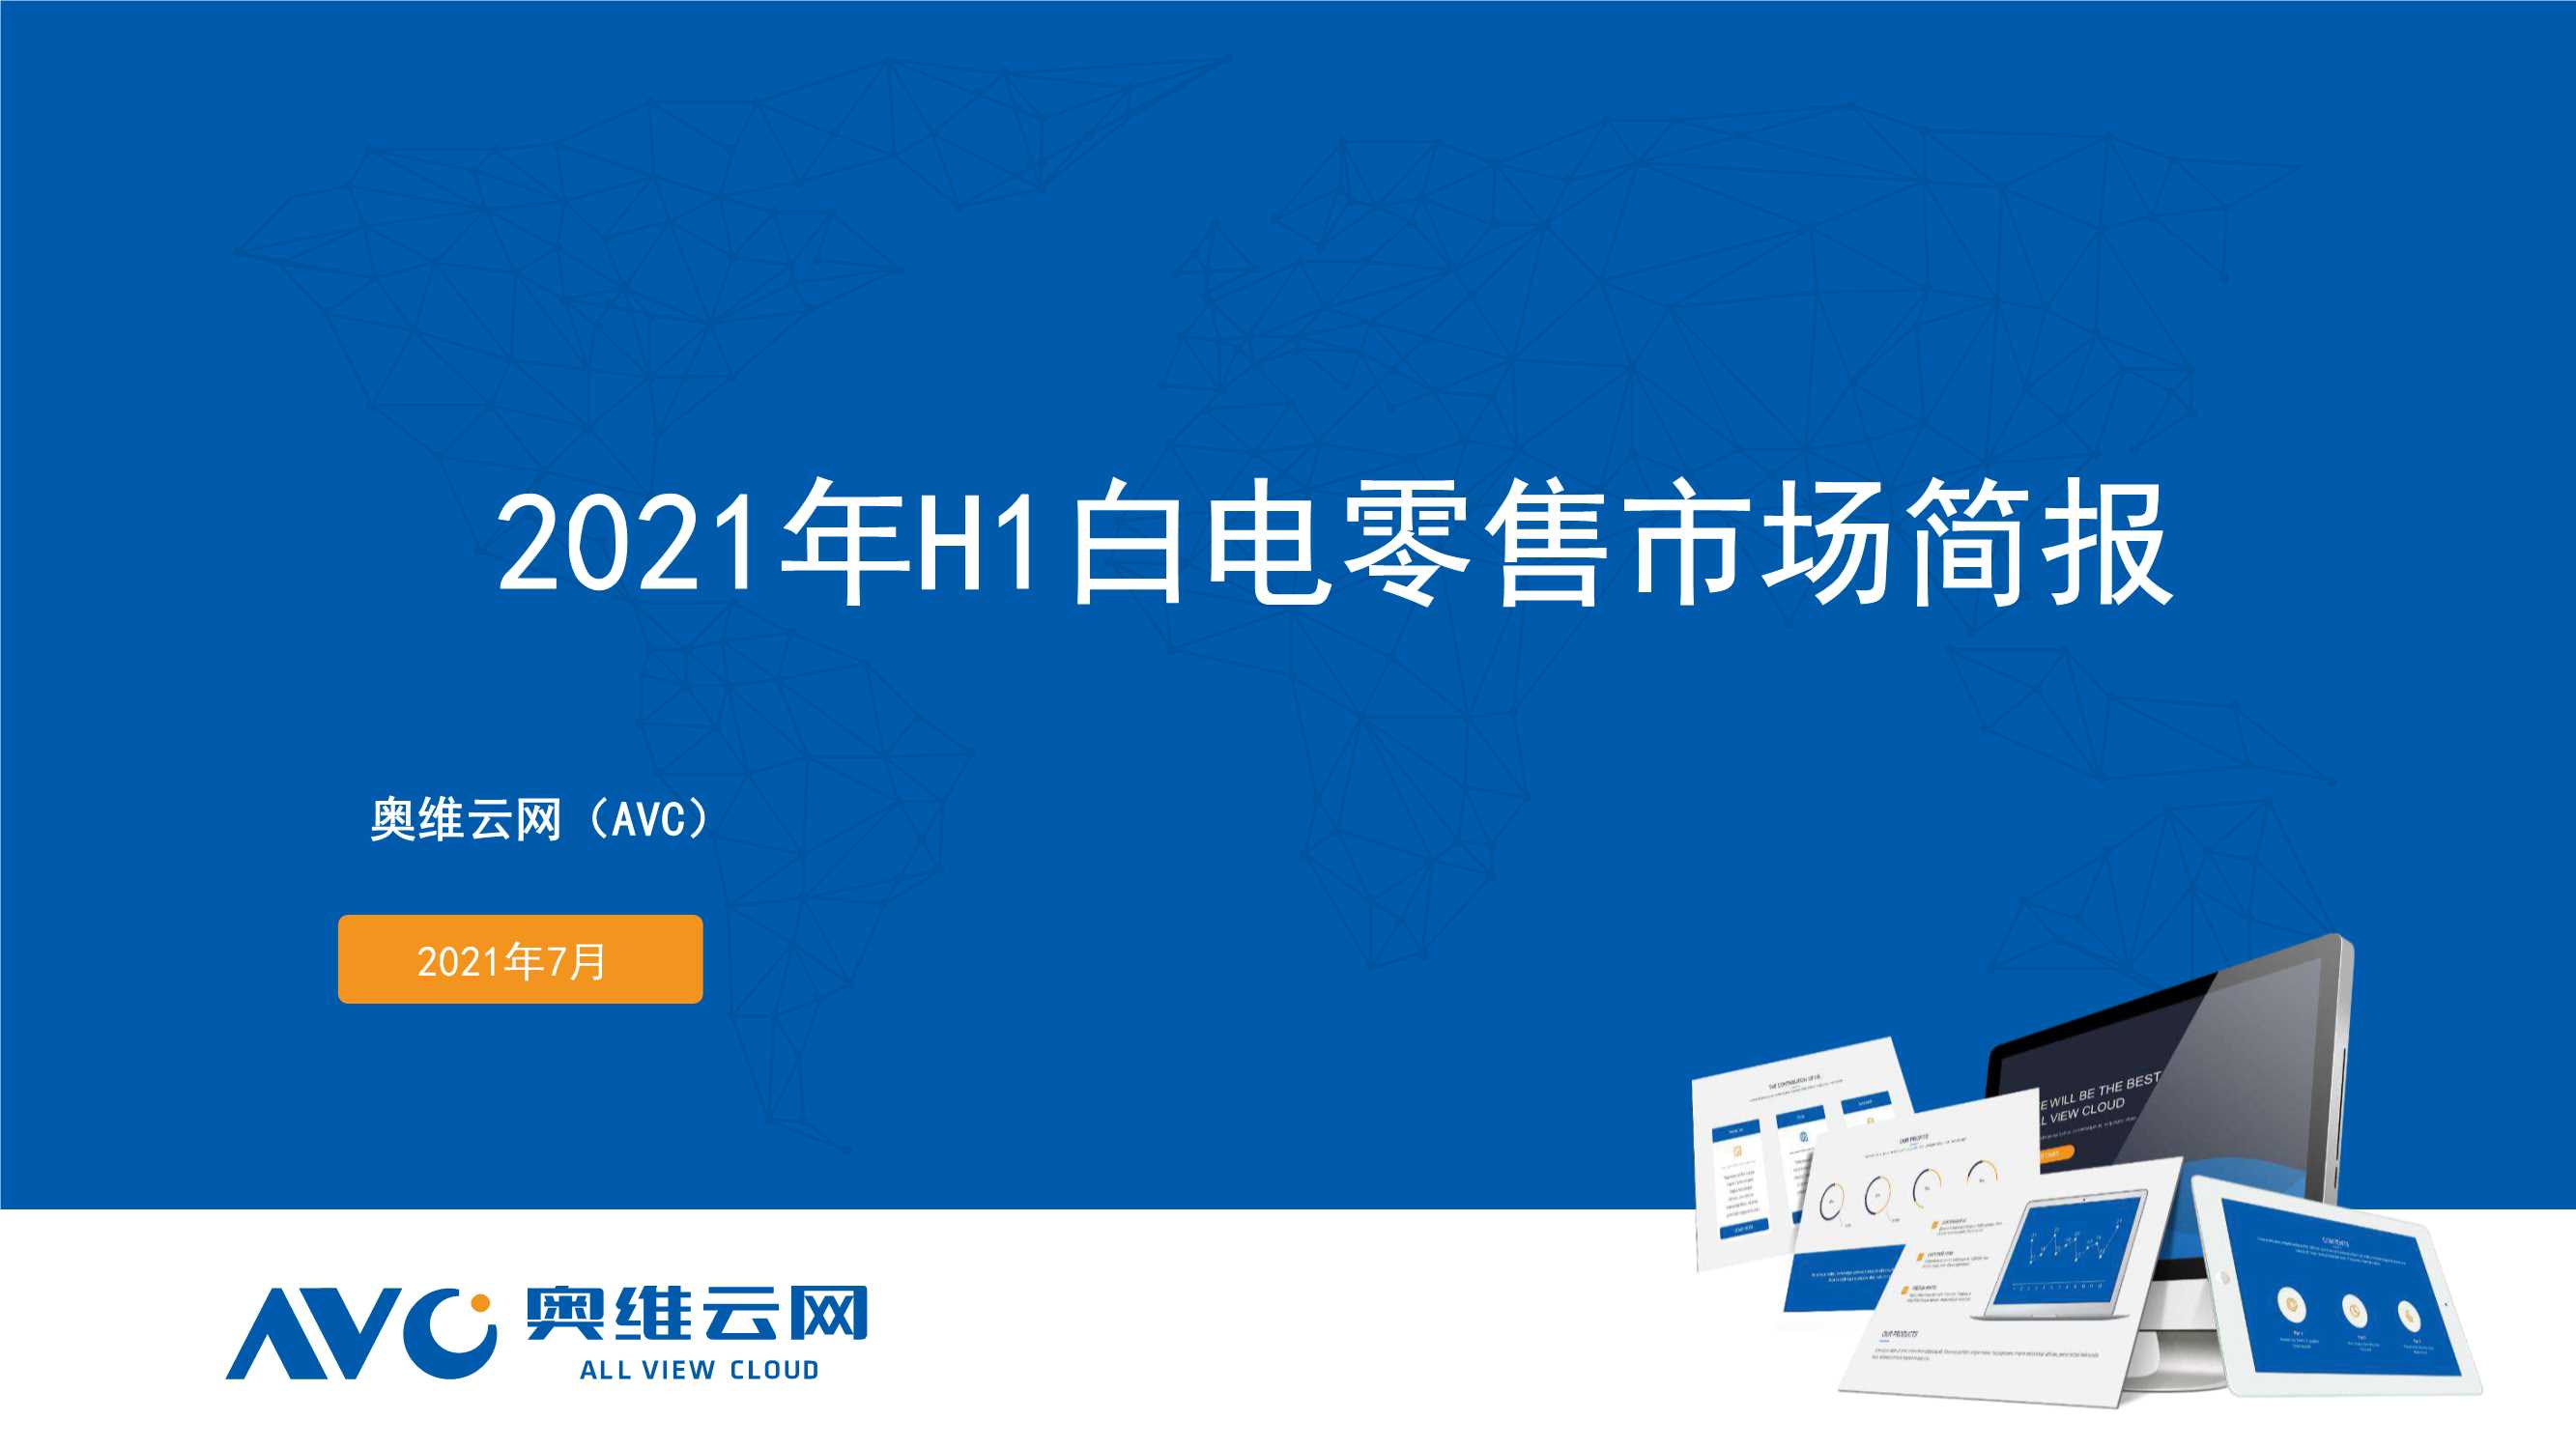 奥维云网-2021年中国白电市场半年简报-2021.07-32页